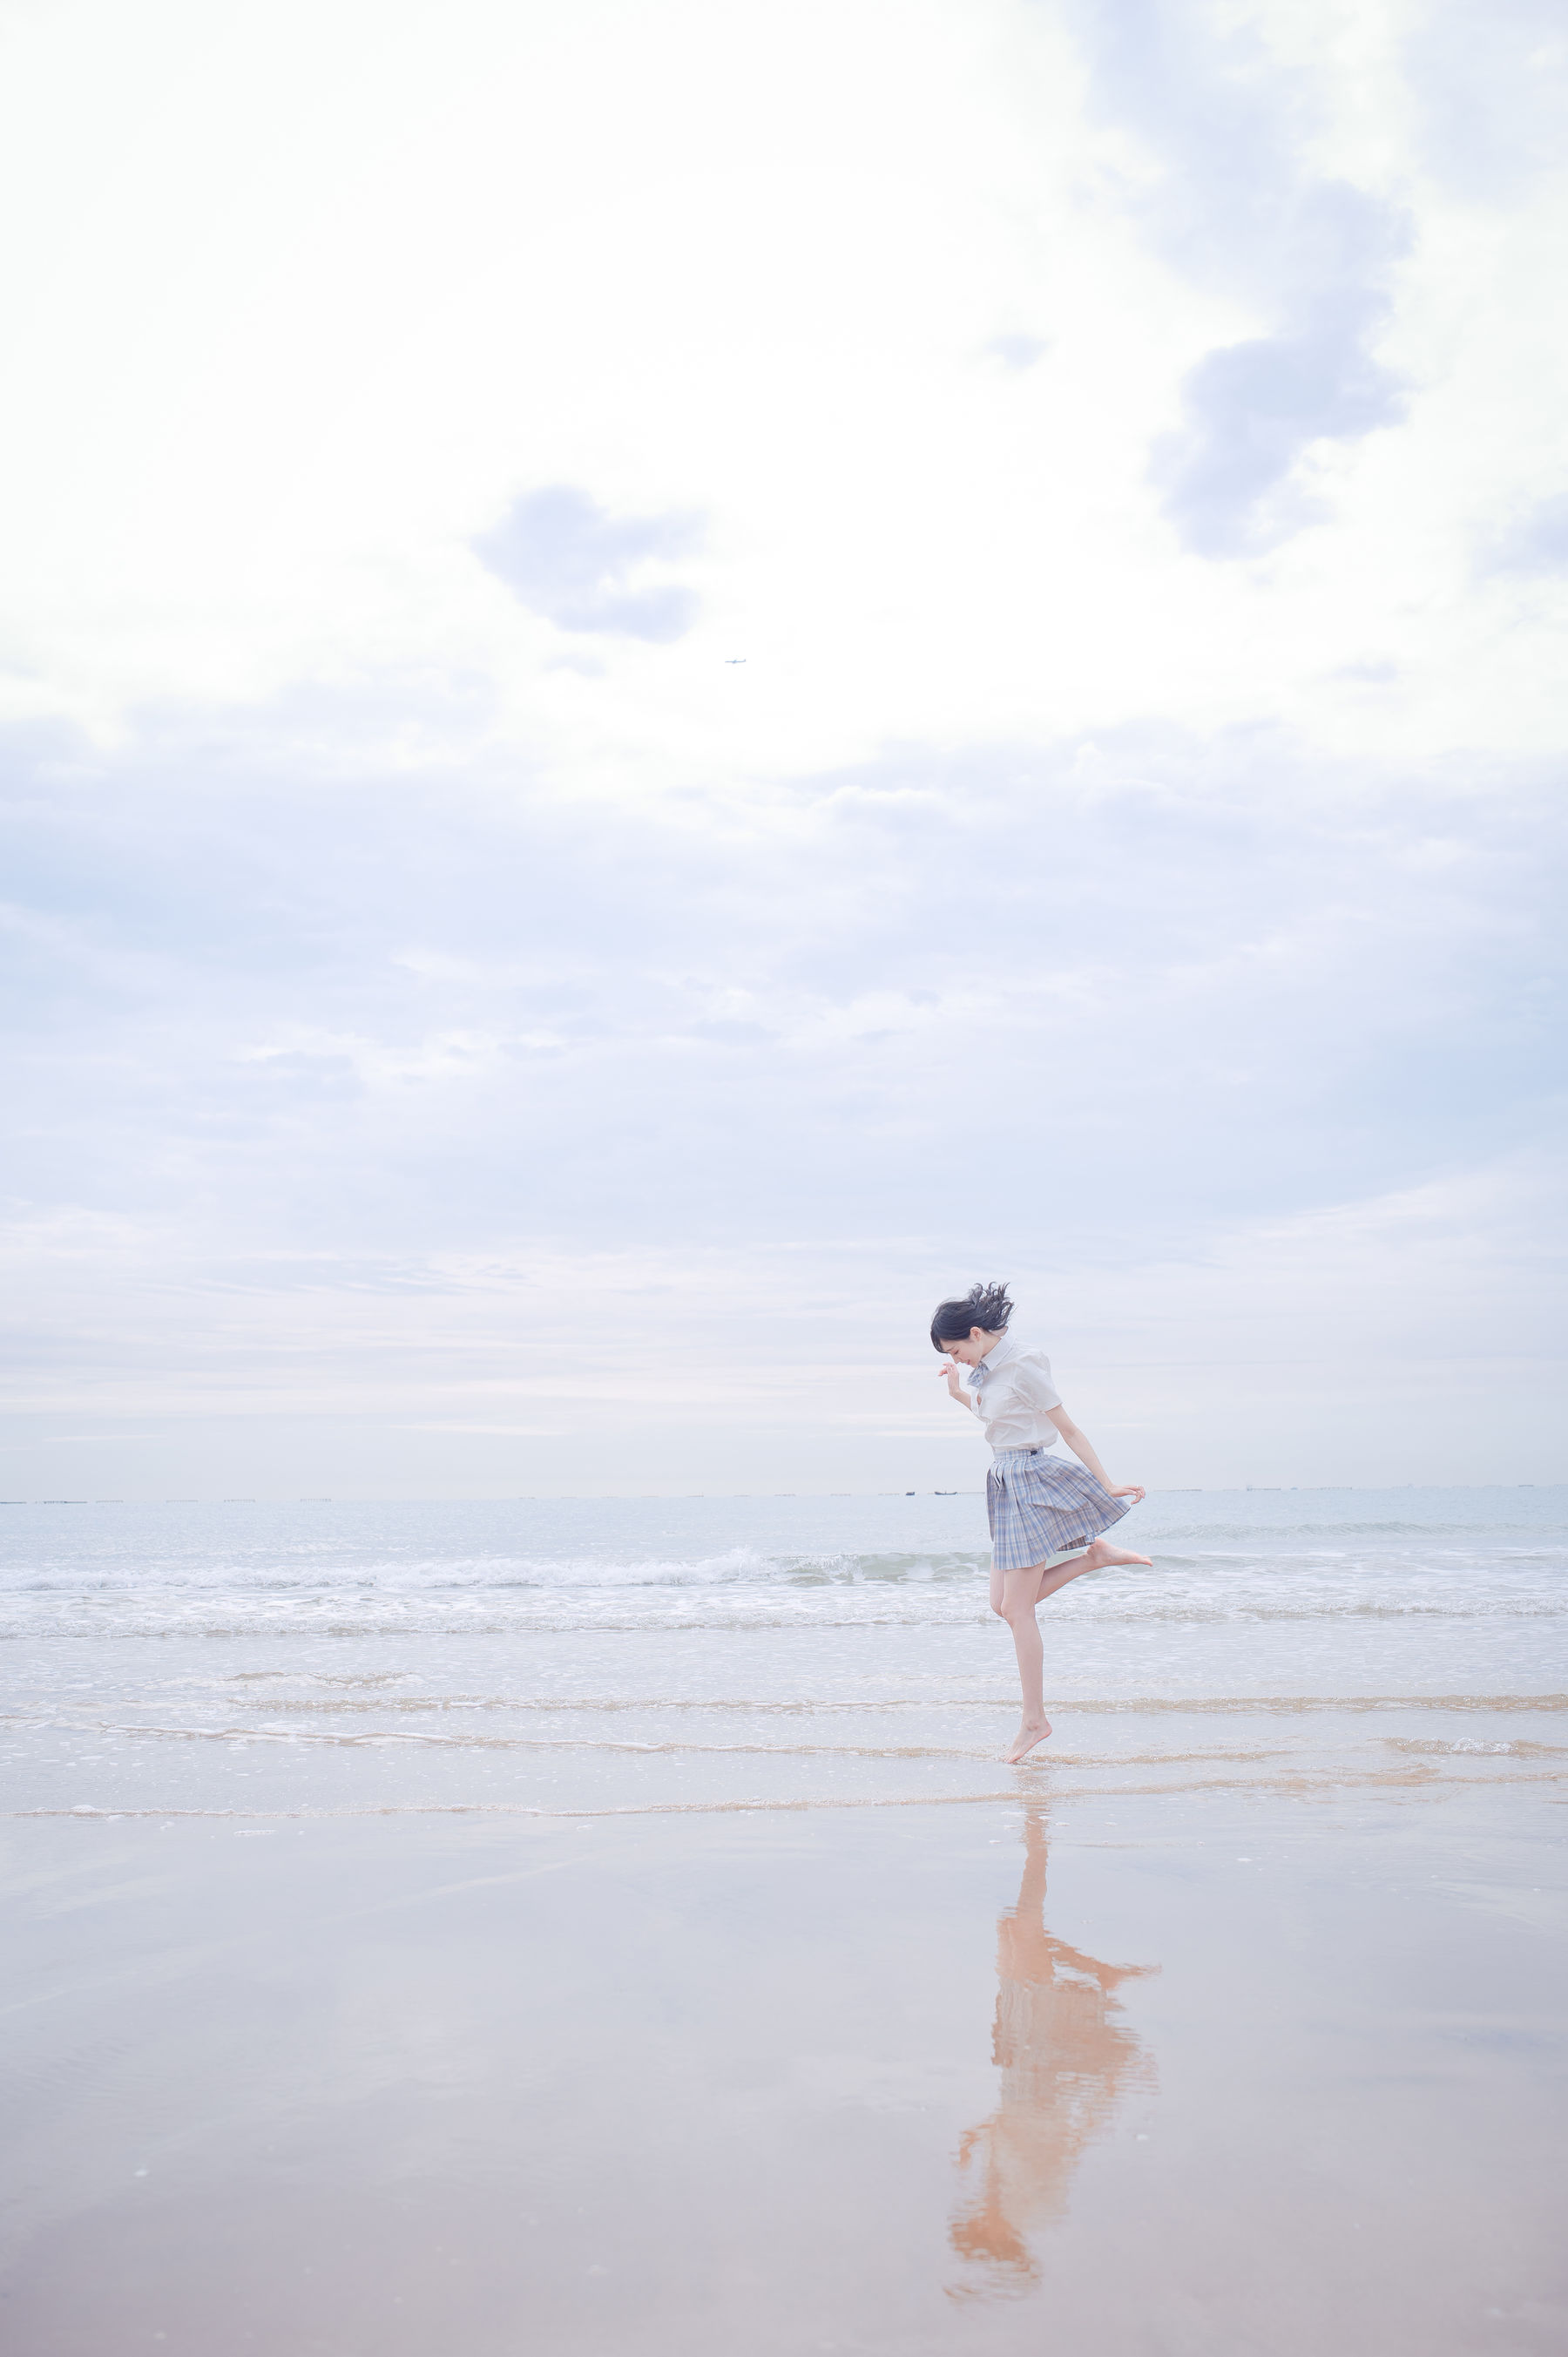 [COS welfare] Zhou Ji is cute rabbit – seaside JK